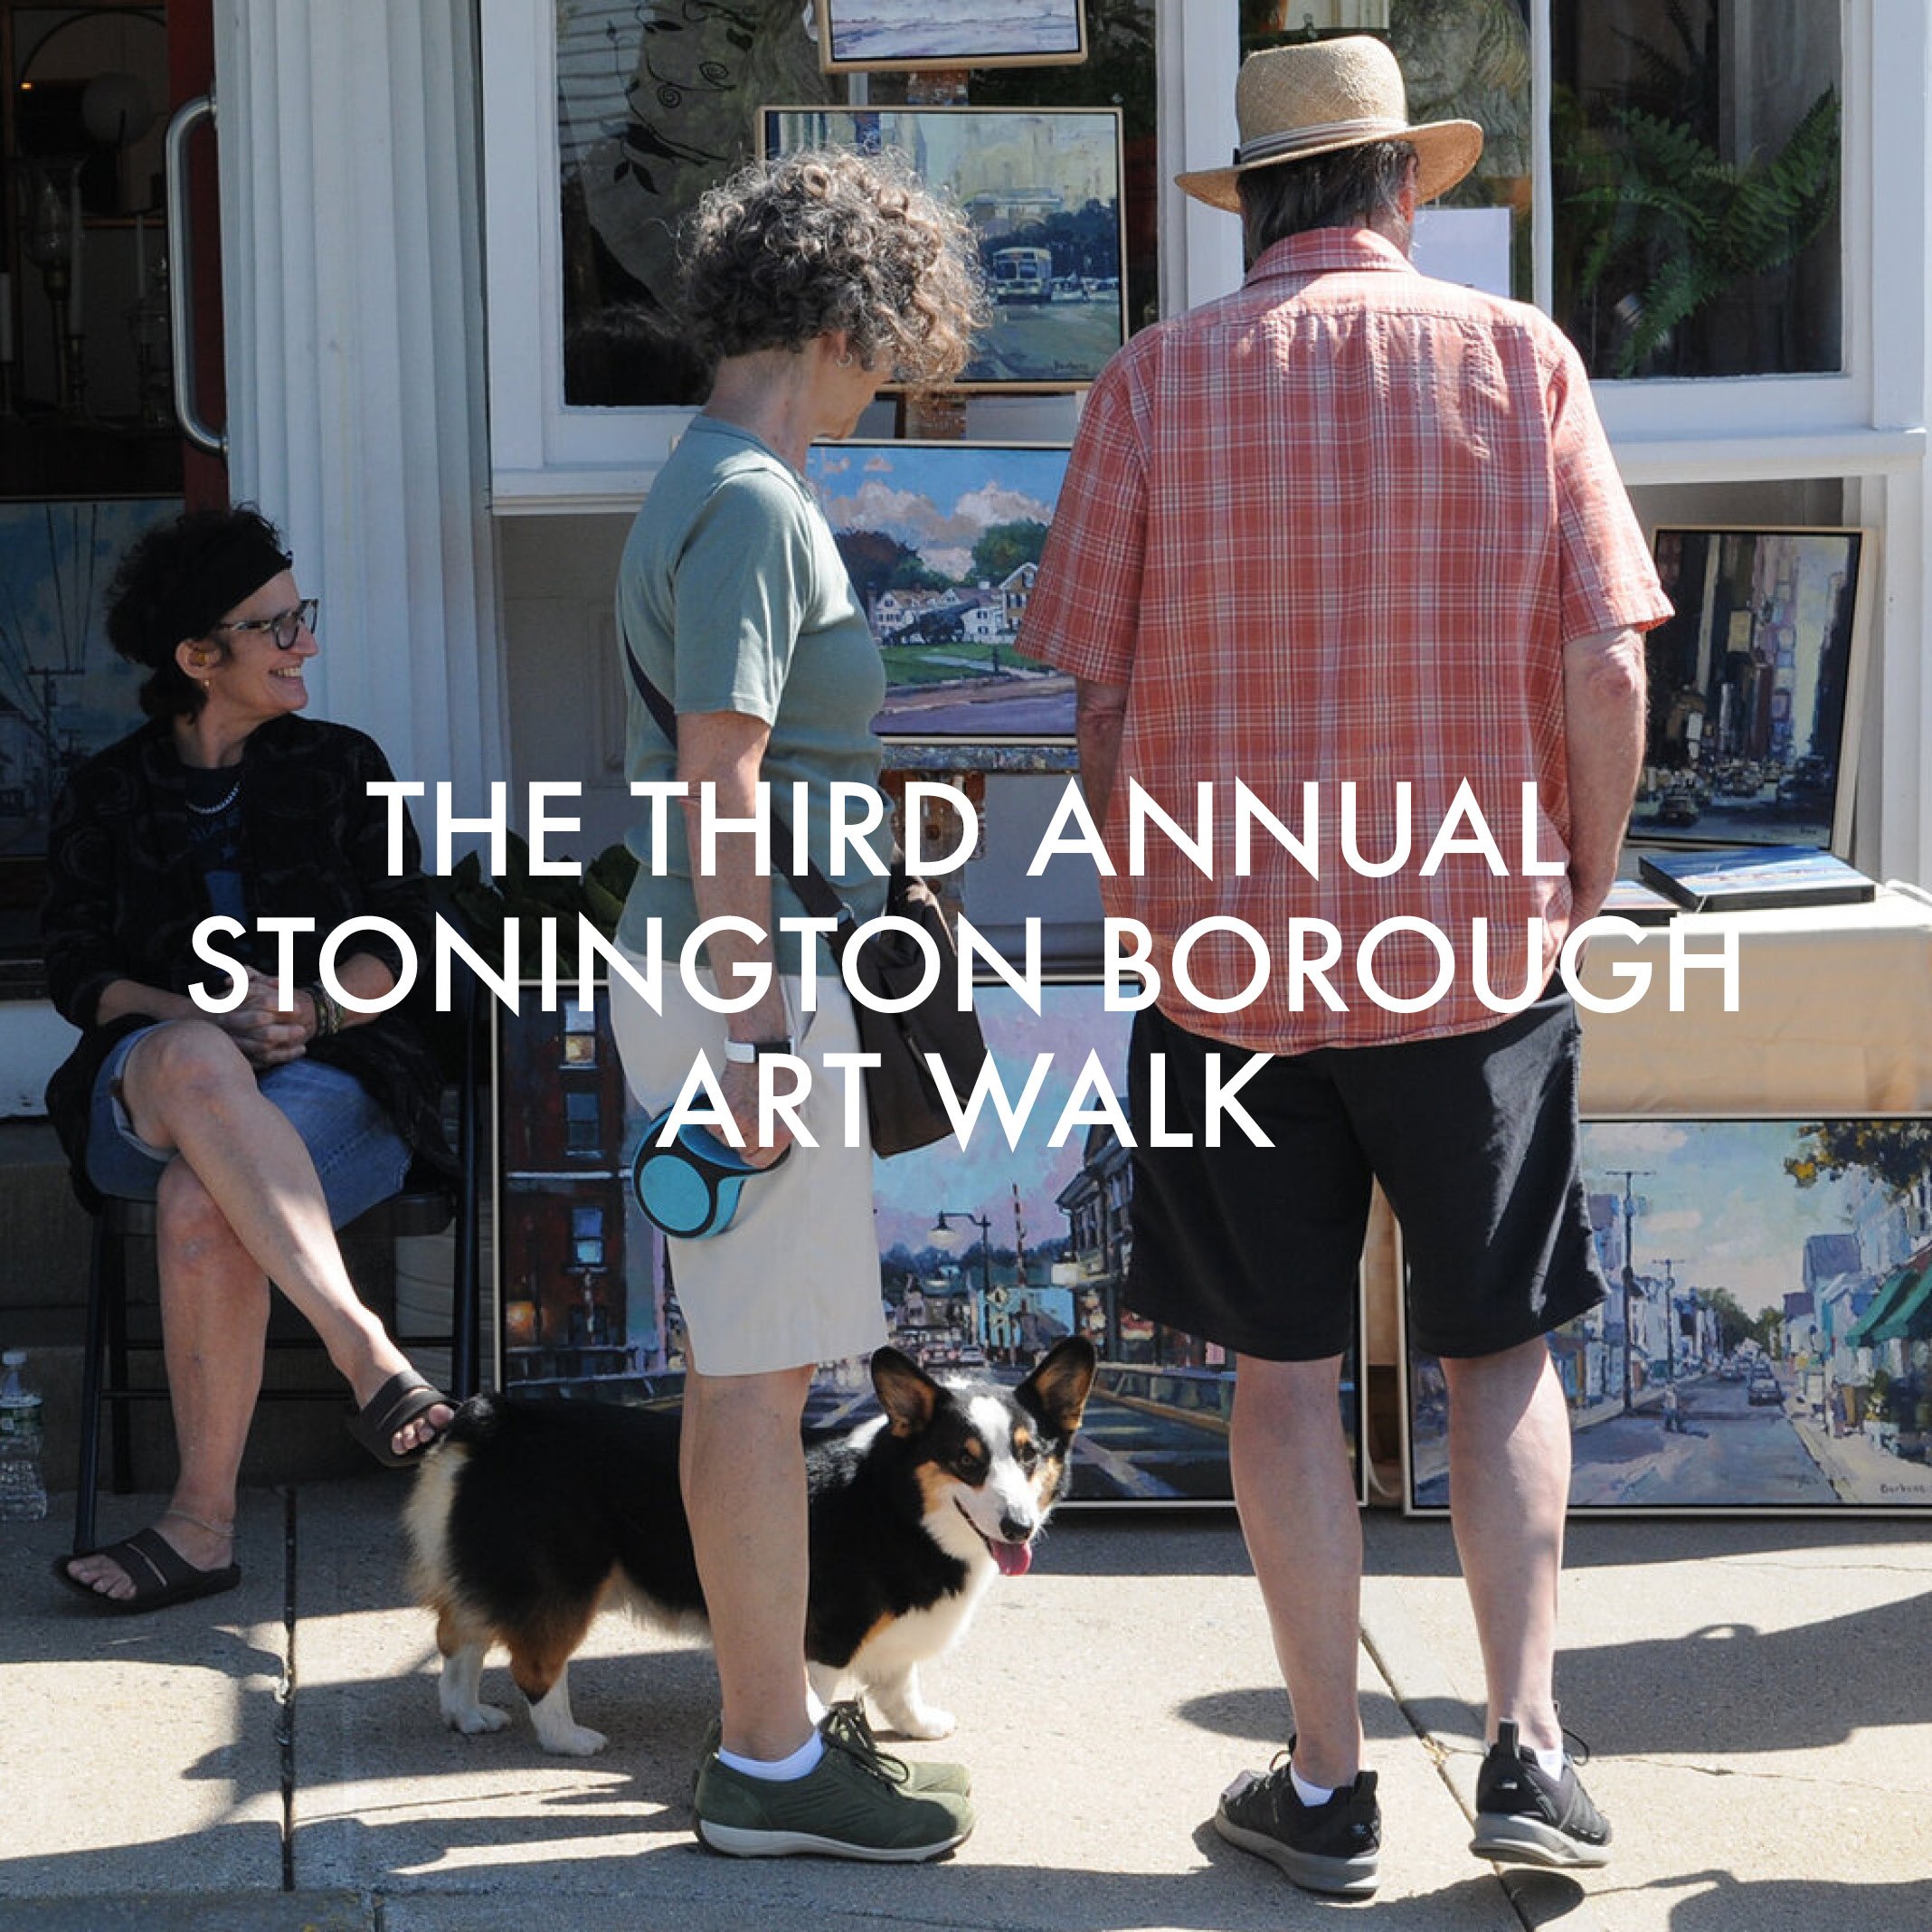 The First Annual Art Walk